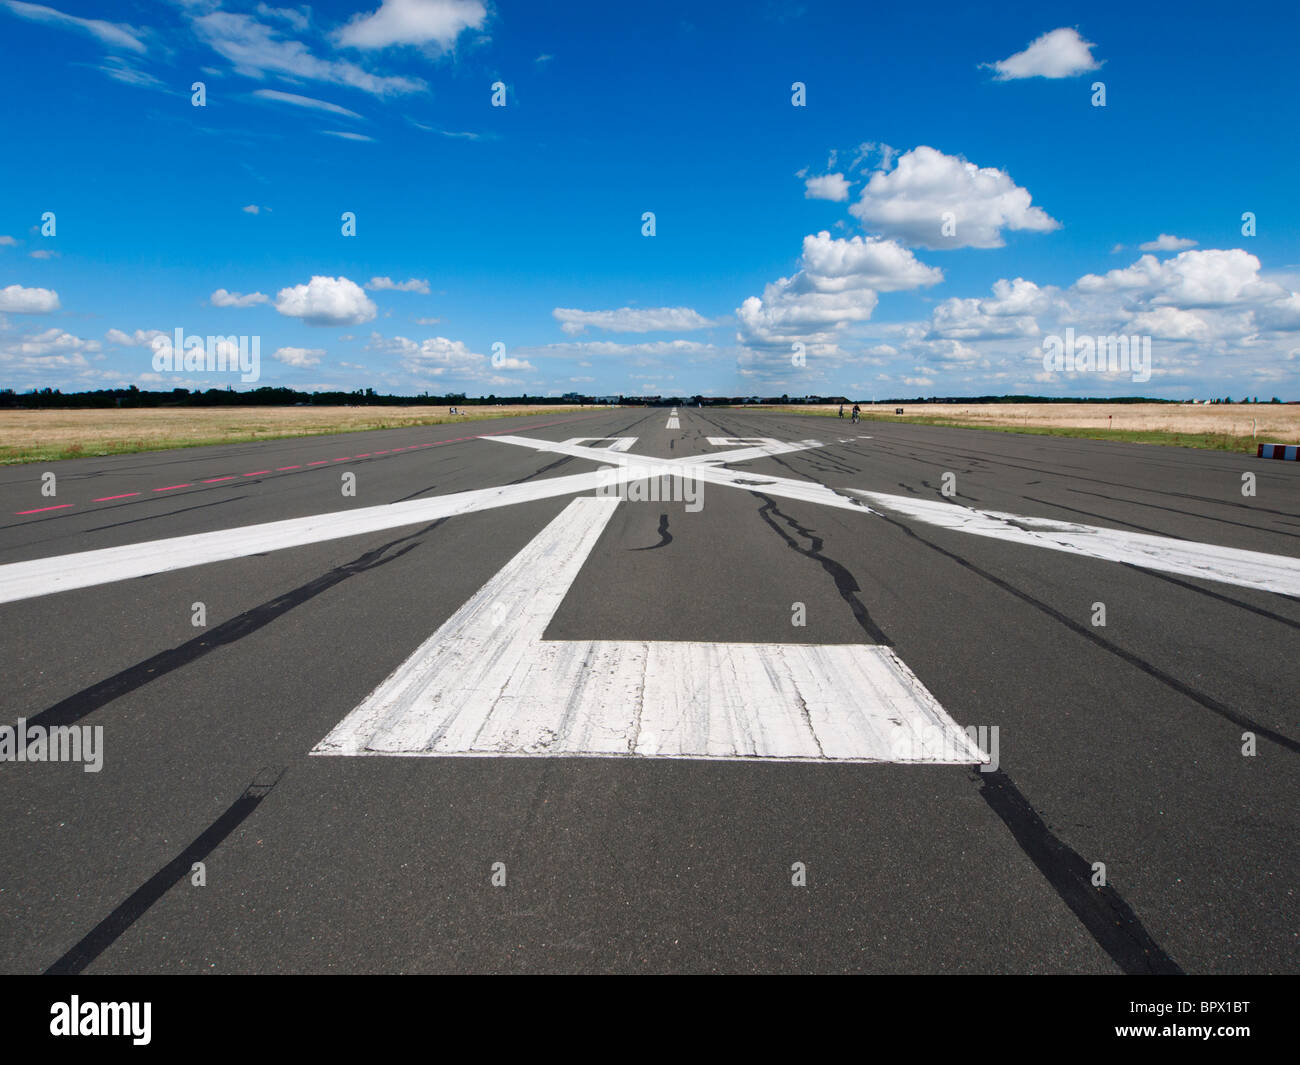 La piste désaffectée à new city public Tempelhofer Park sur le site de l'ancien aéroport de Tempelhof célèbre à Berlin Allemagne Banque D'Images